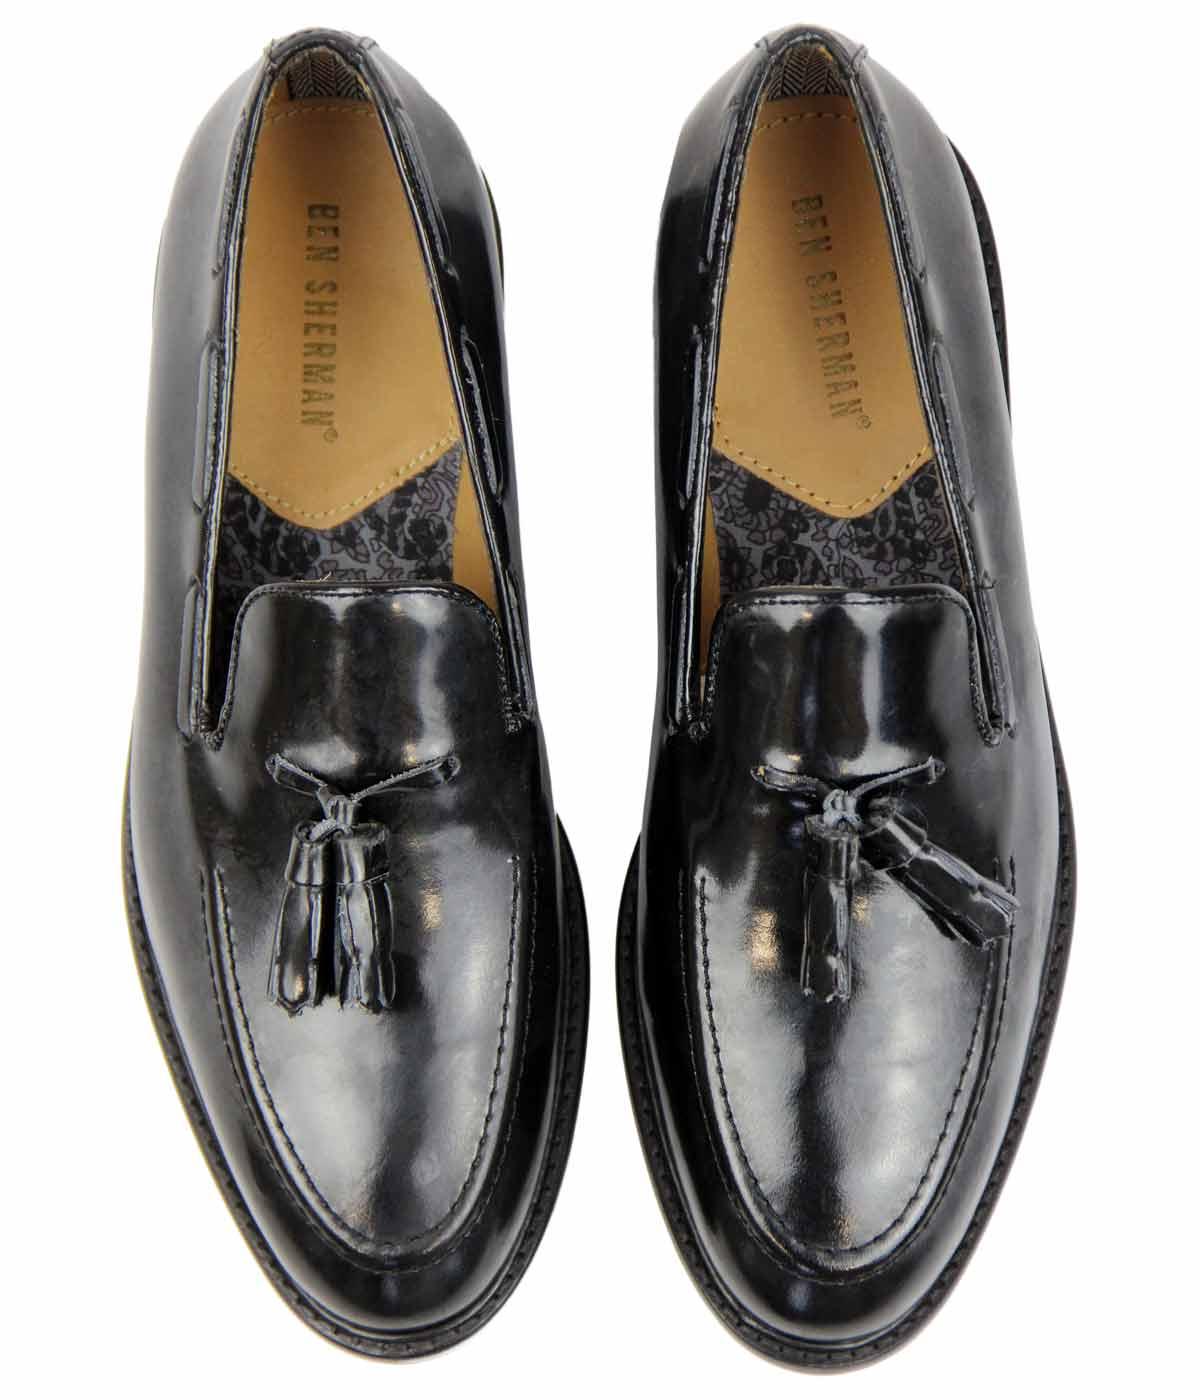 BEN SHERMAN Alfr City Loafers Retro Mod Tassel Loafer Shoes Black